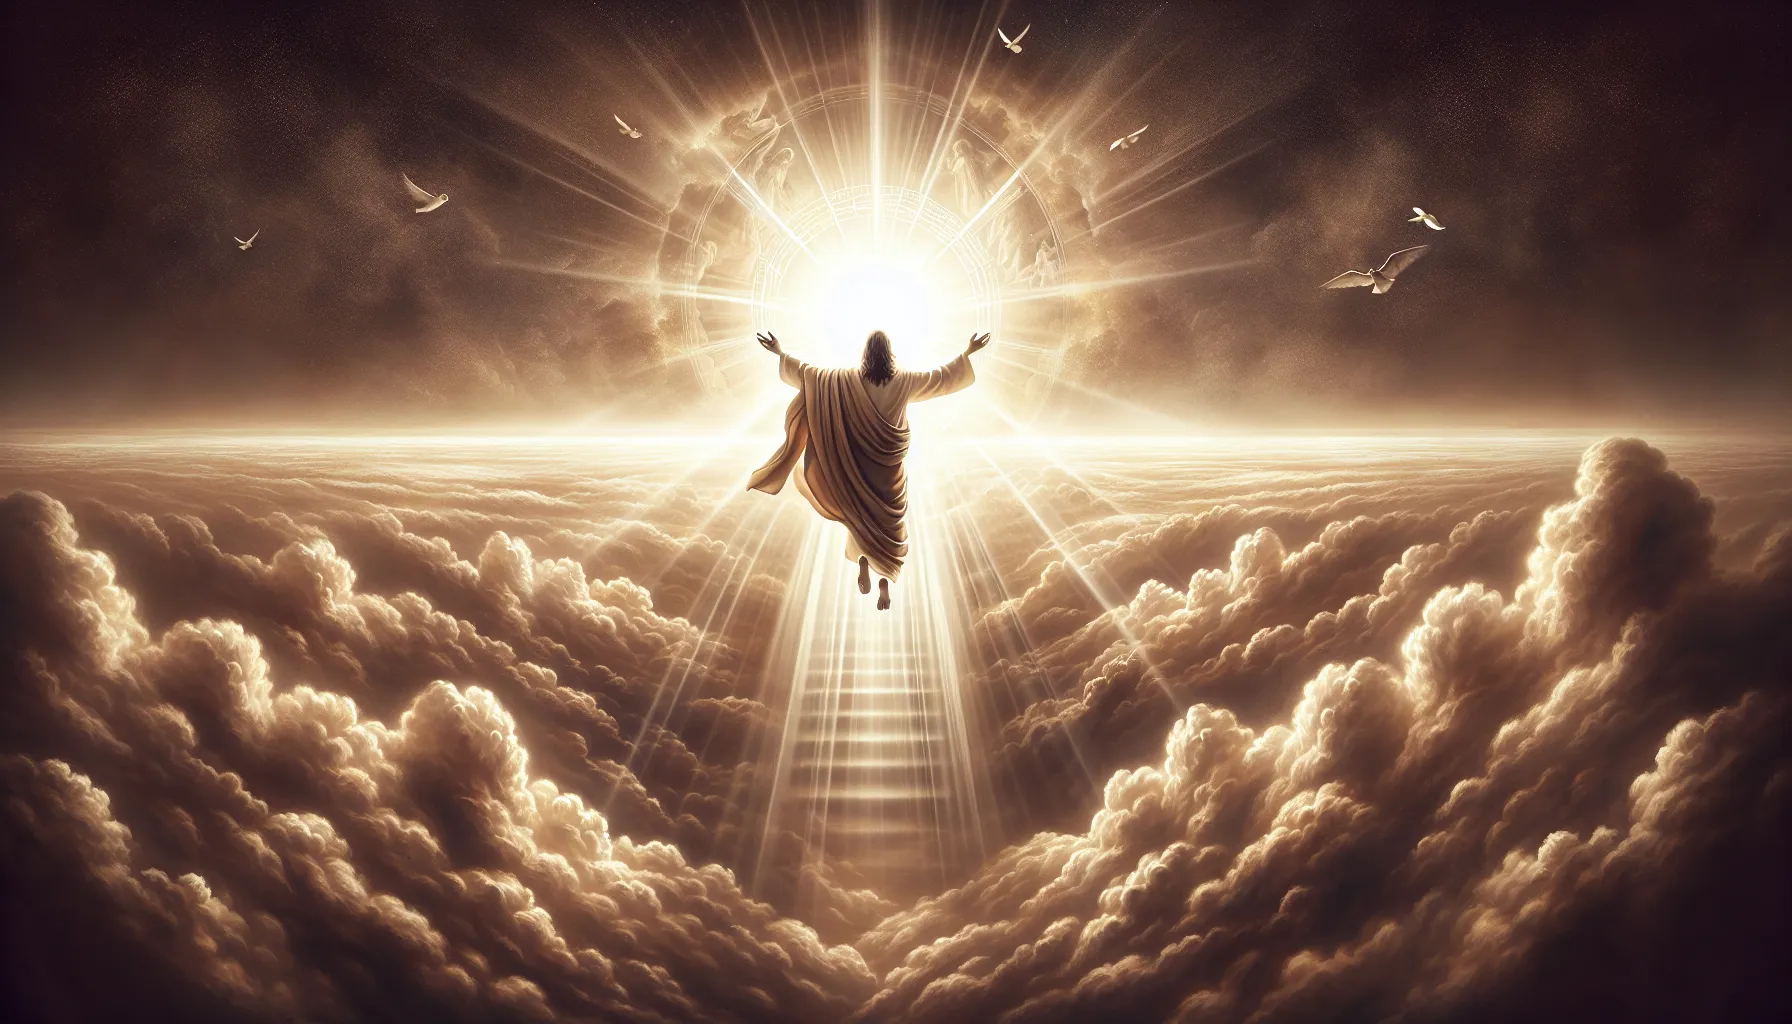 Imagen de la Ascensión de Jesucristo: un símbolo de la trascendencia divina y la promesa de vida eterna.